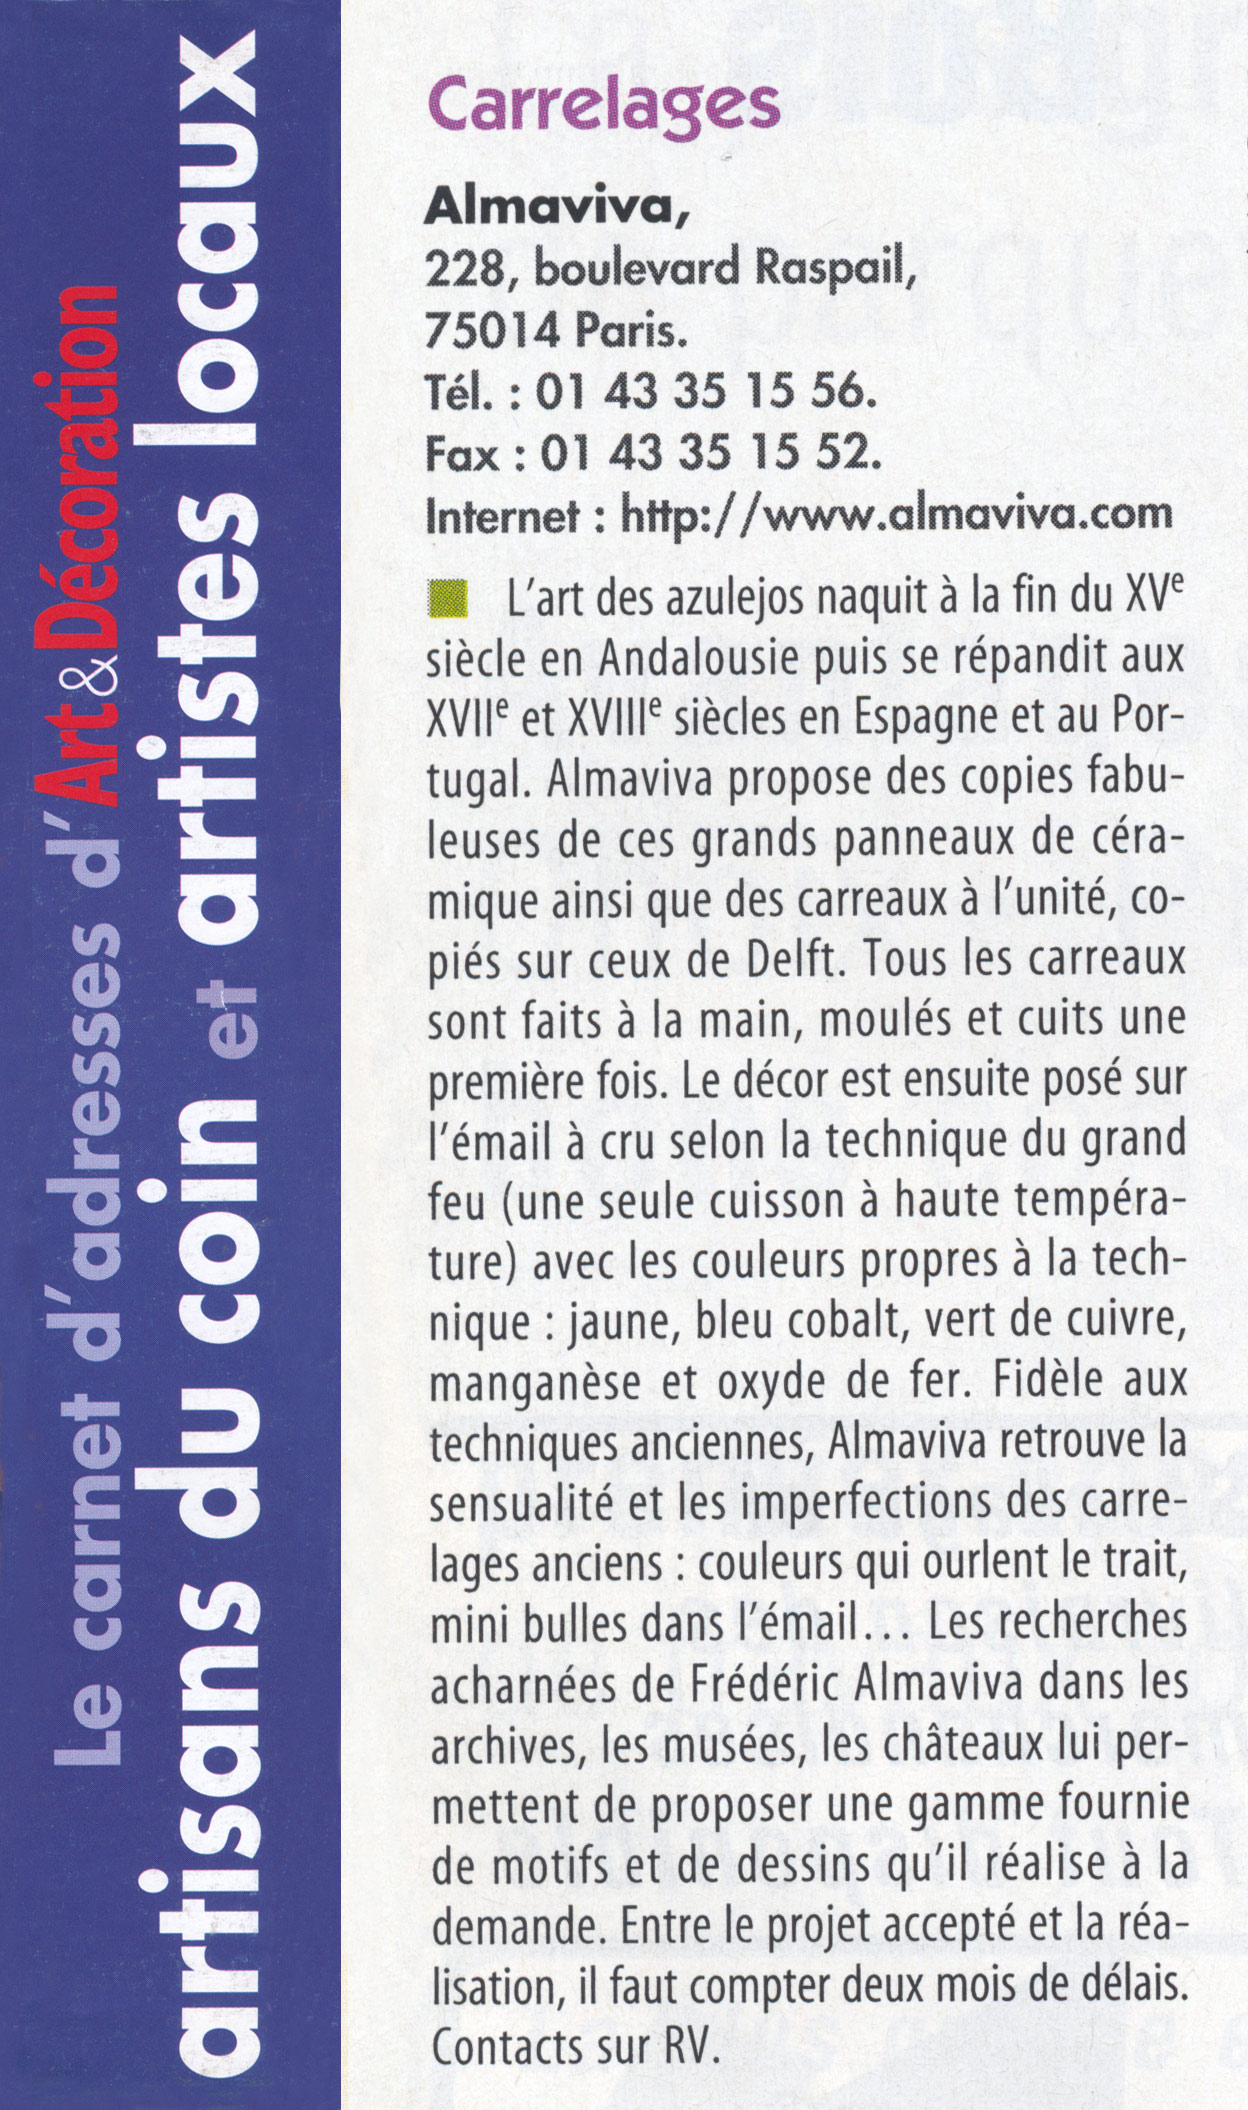 Le carnet d'adresses du magazine Art et Décoration de Janvier 2009 mentionne les carrelages fabriqués par l'atelier Almaviva